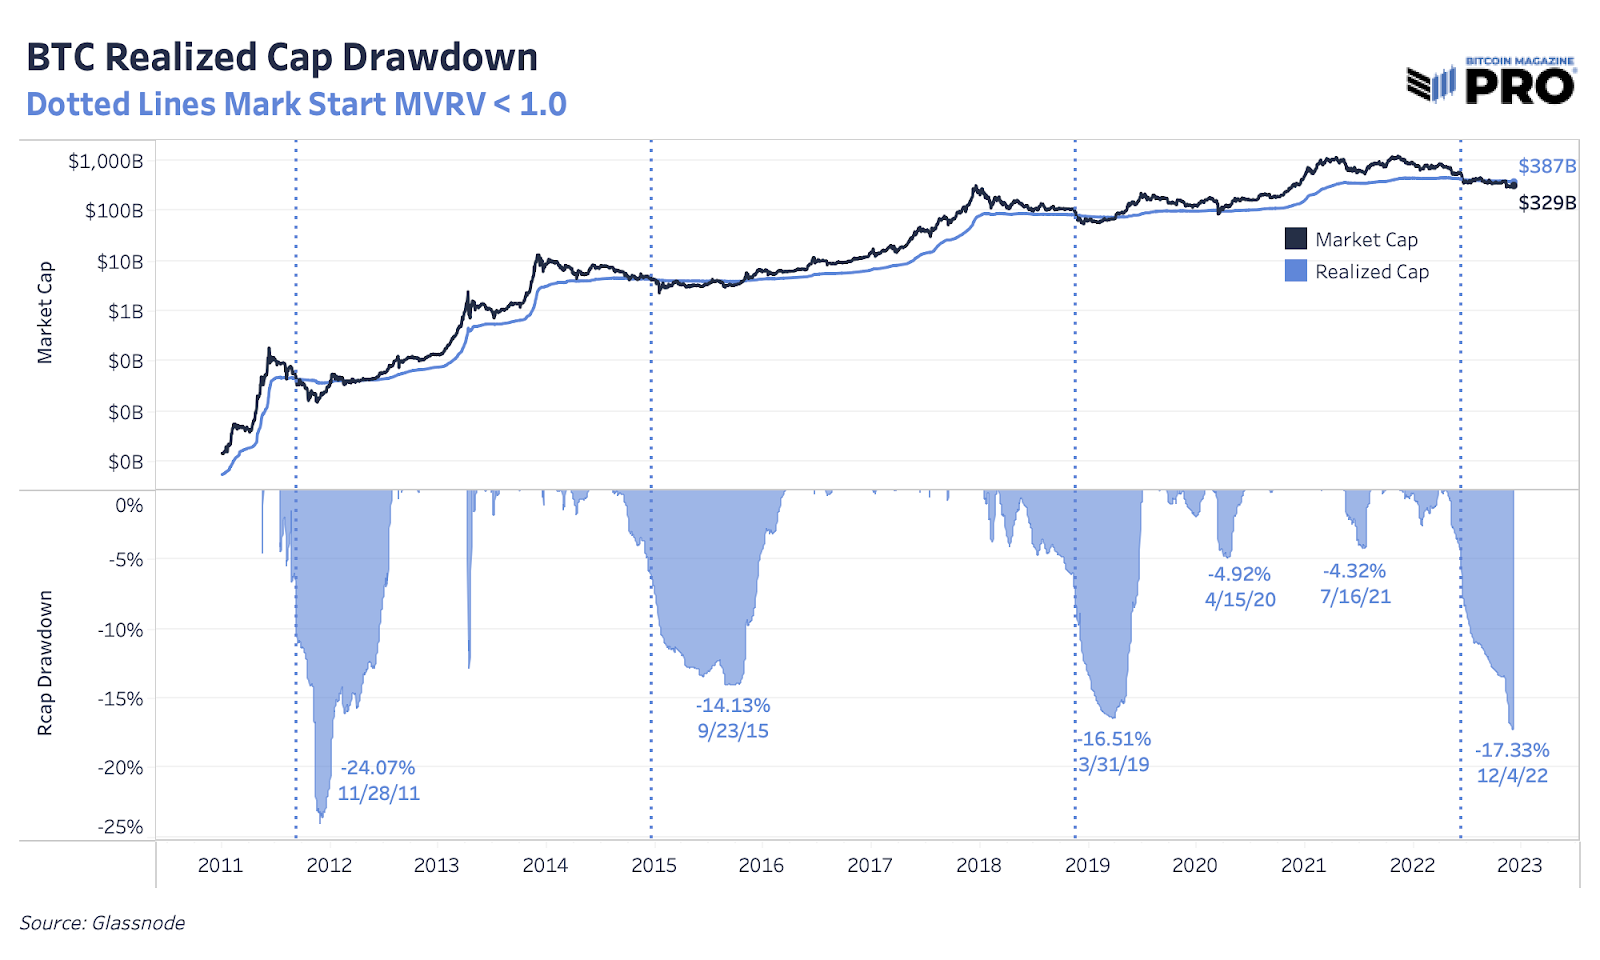 BTC realized capitalization drawdown